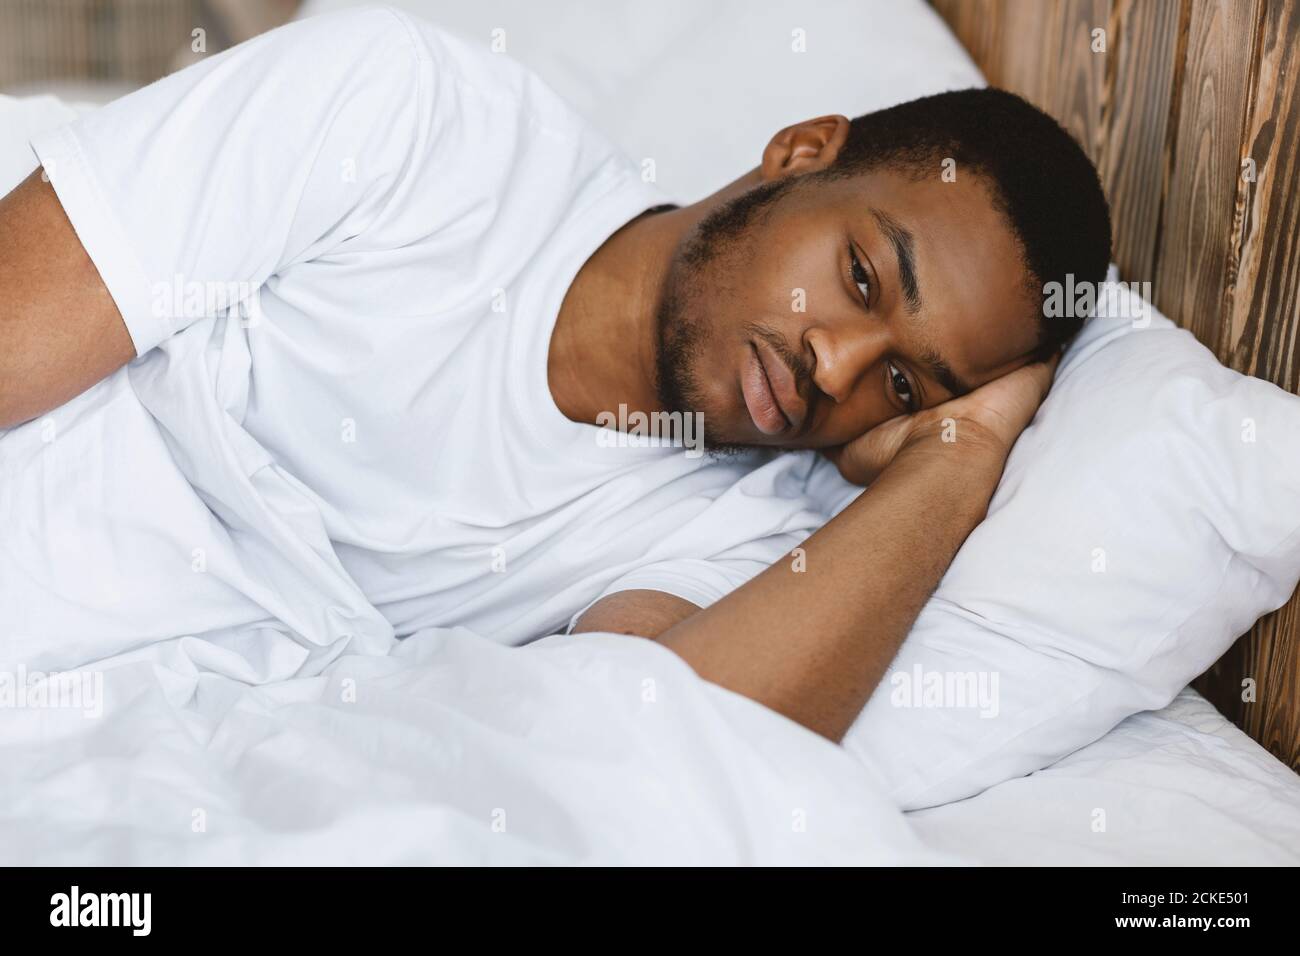 Depresso African American Man mentire Awake avendo Insomnia a casa Foto Stock